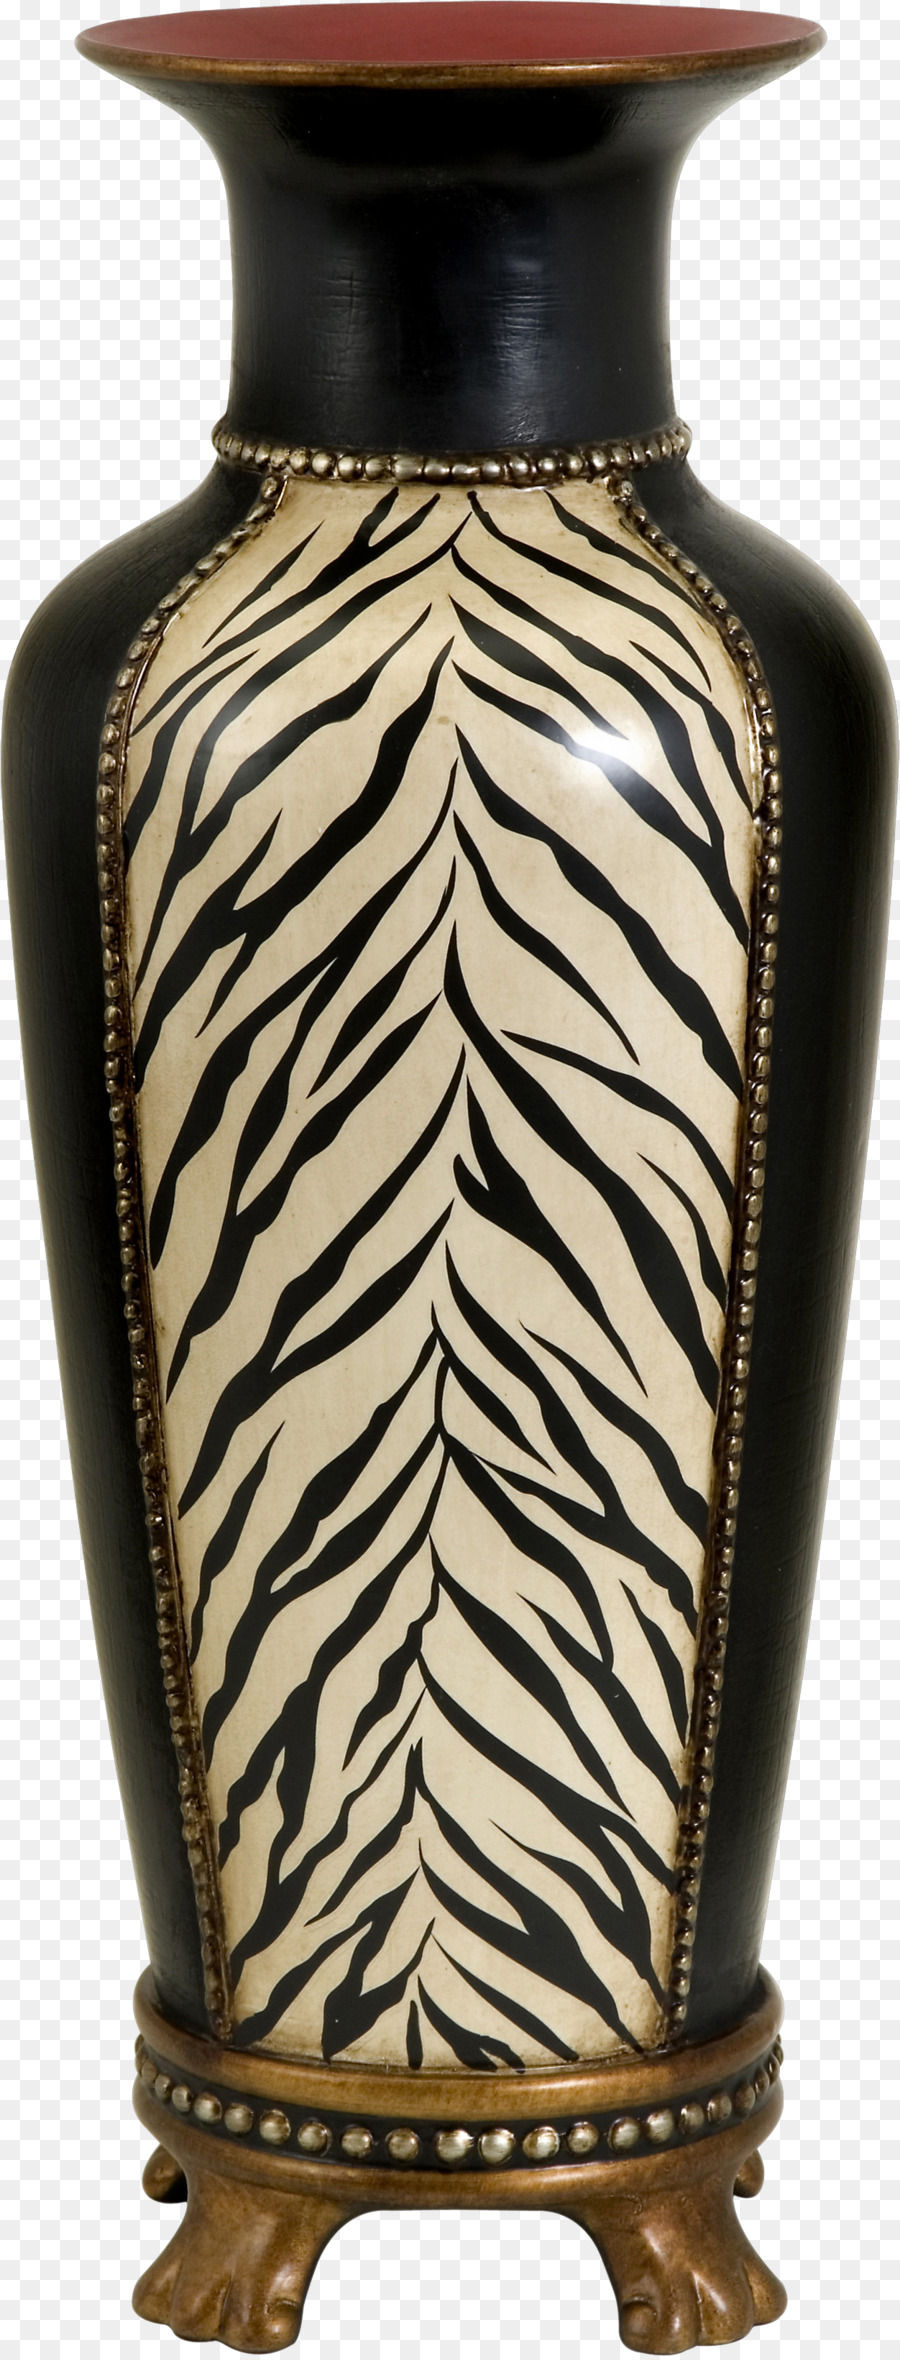 Vase Keramik-Kunst aus Glas - Vase